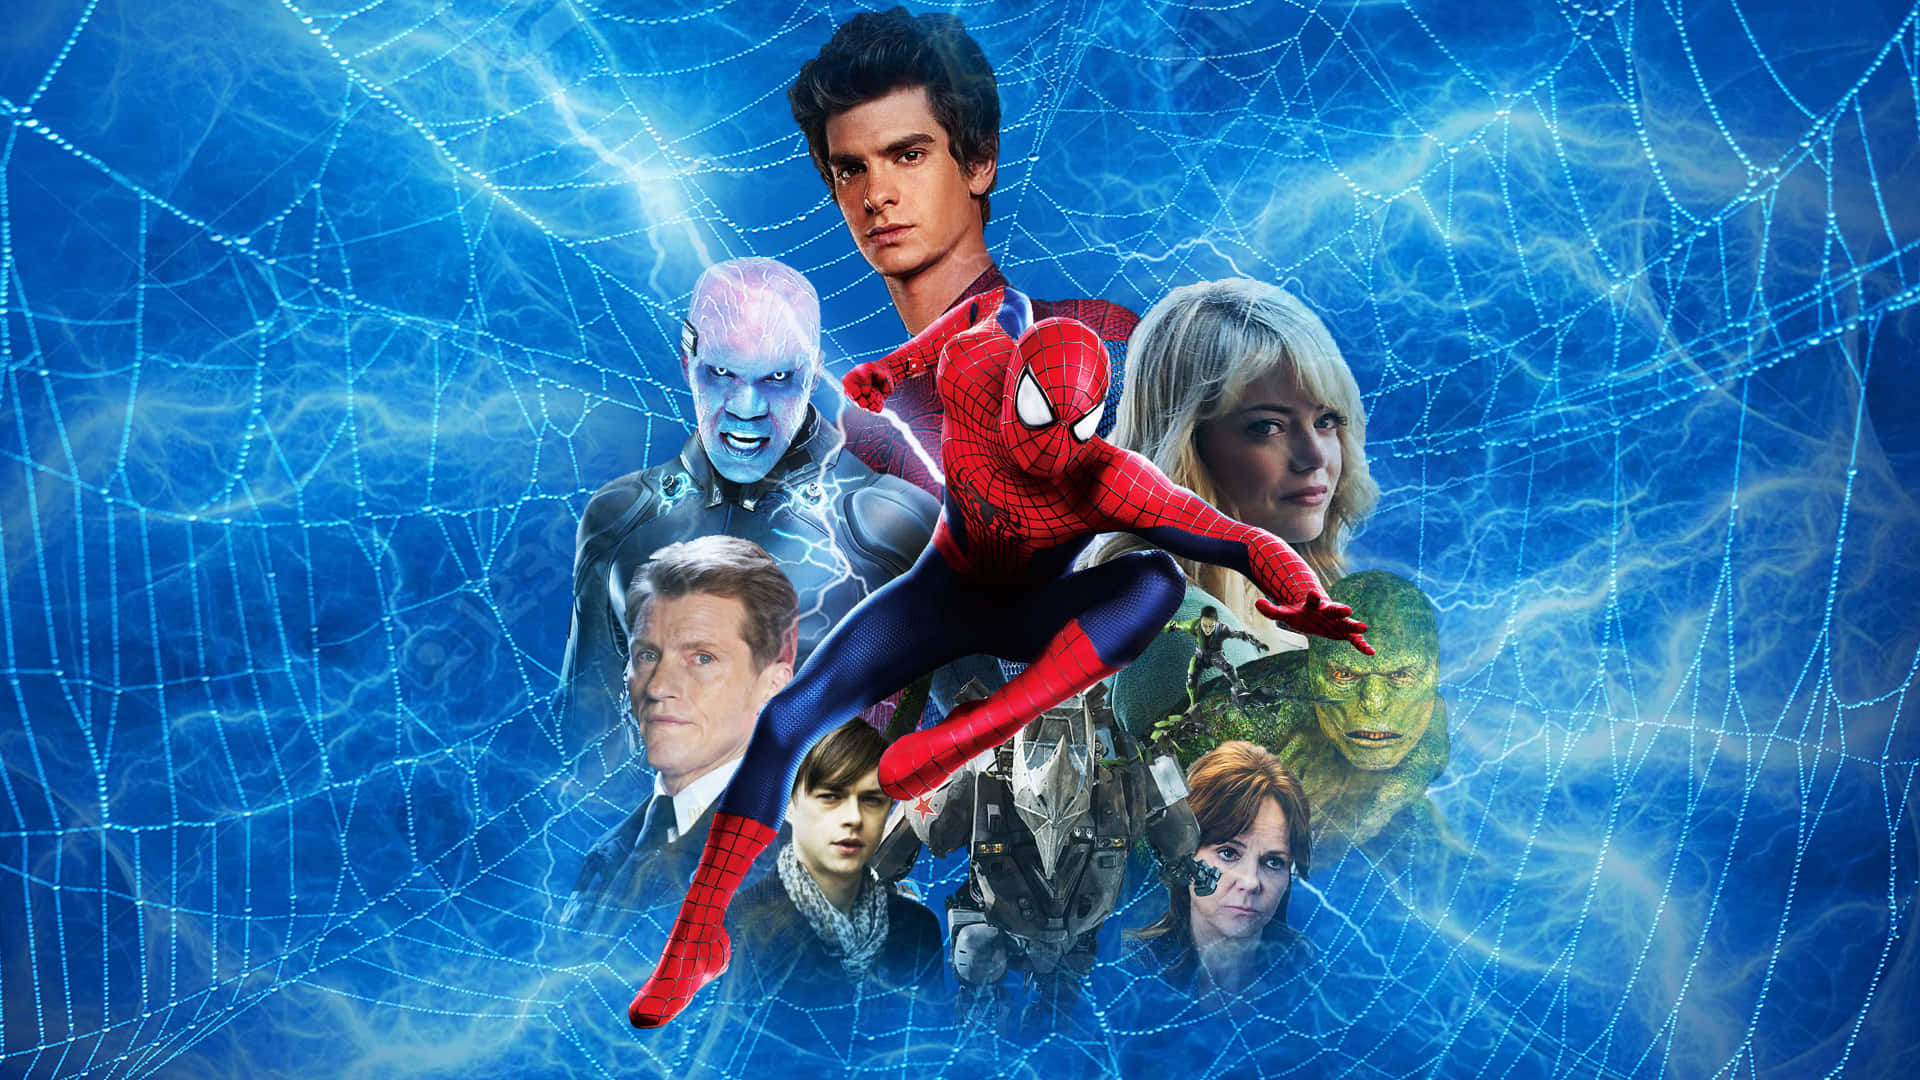 Preparatia Salvare Il Mondo Con I Tuoi Poteri Da Spiderman!